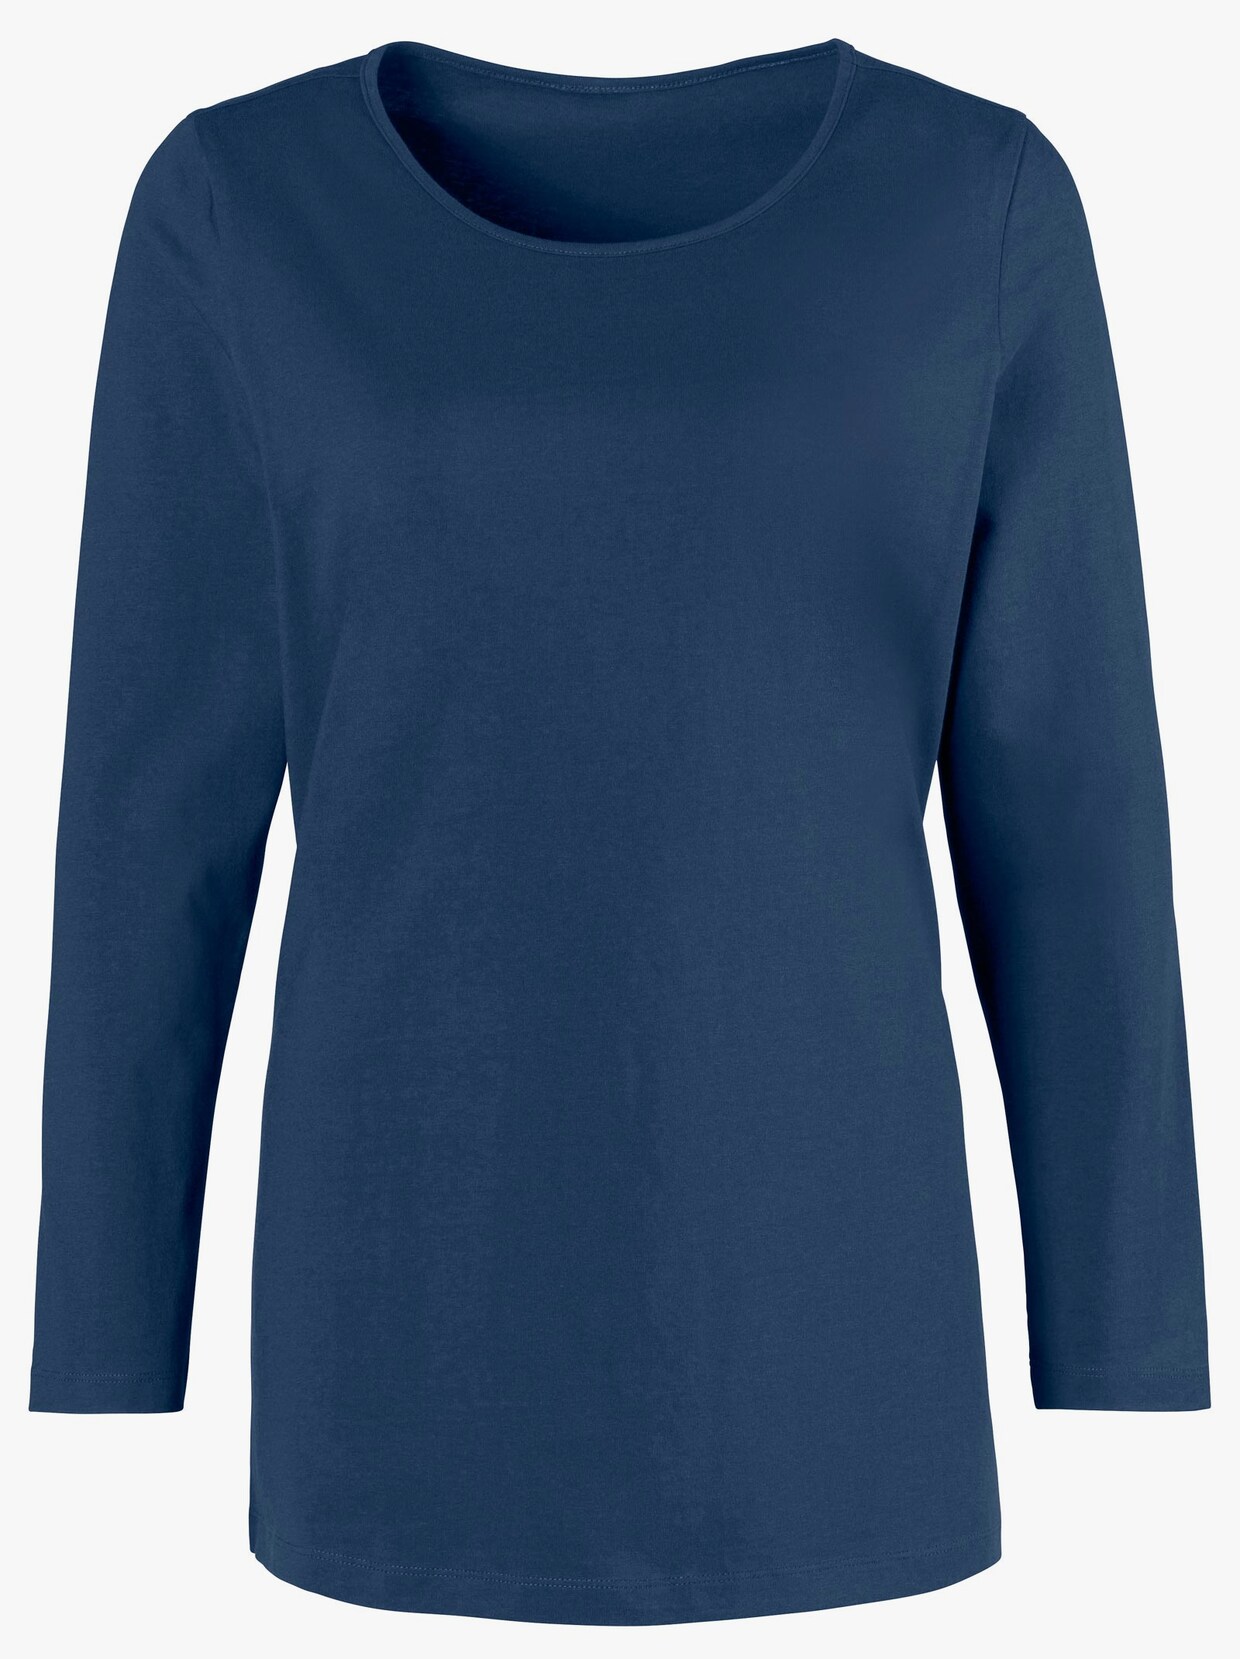 Tričko s dlouhým rukávem - námořnická modrá